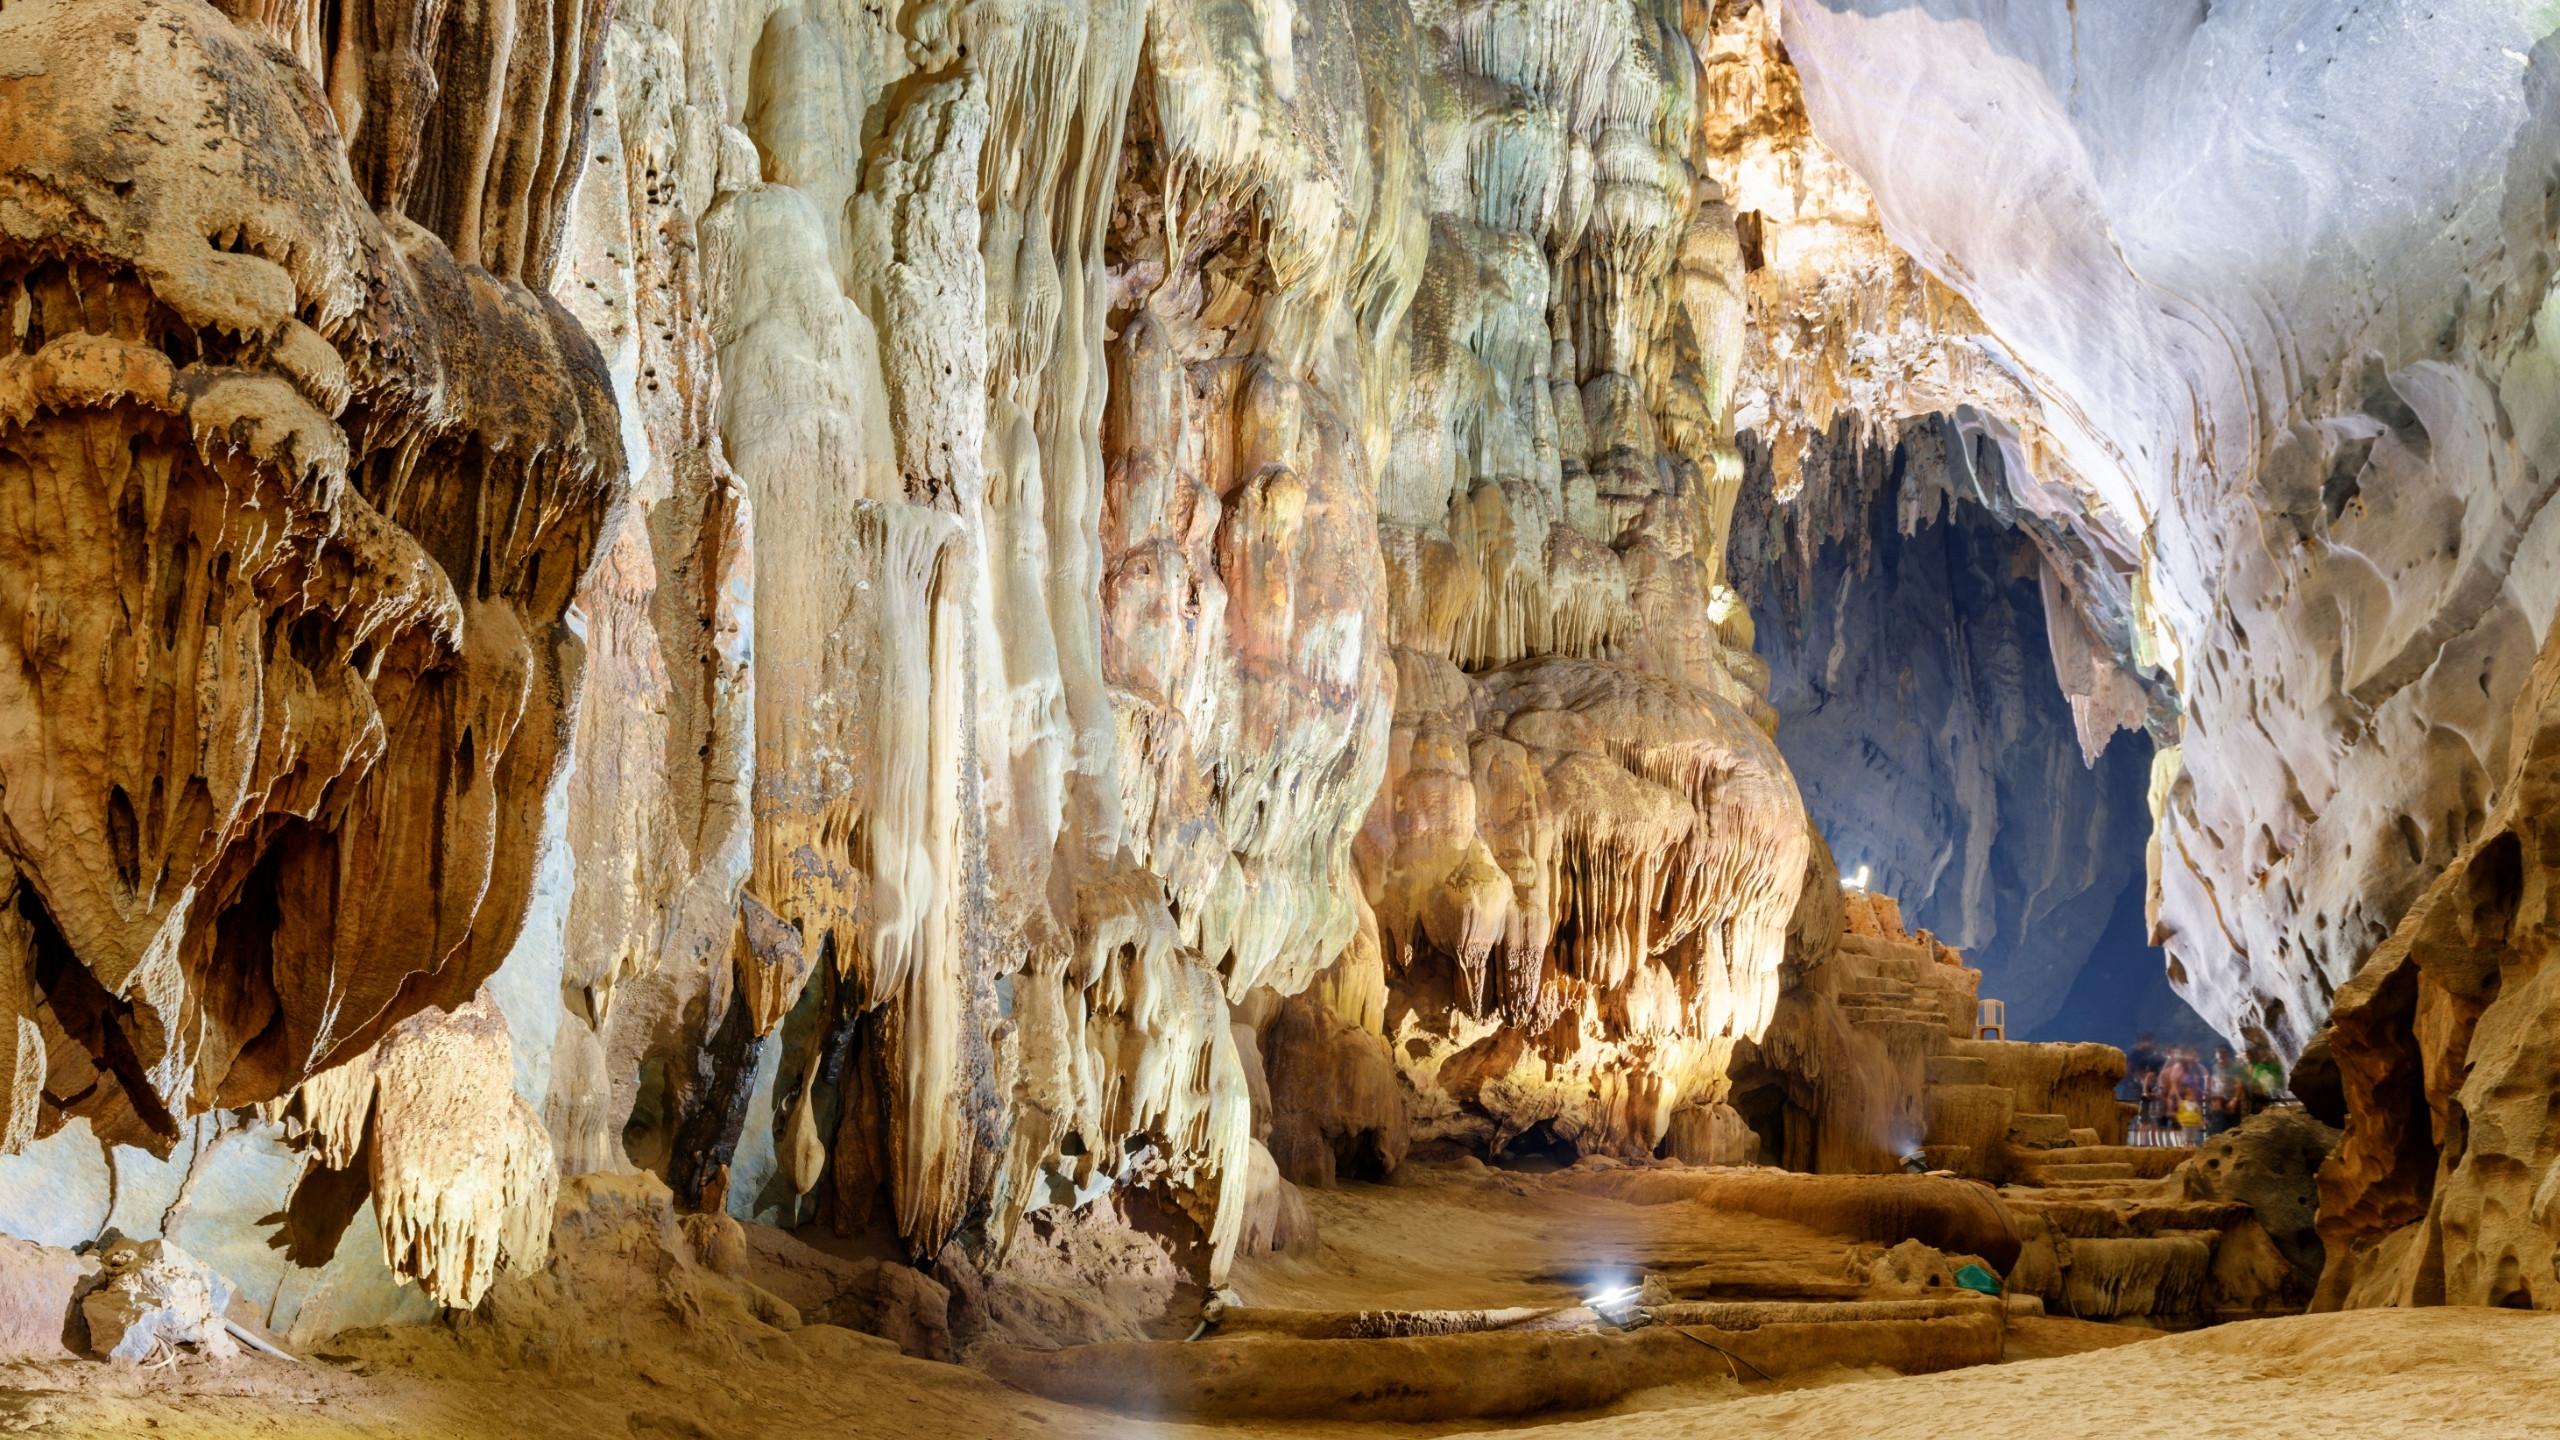 Amazing Chamber inside Phong Nha Cave, Vietnam